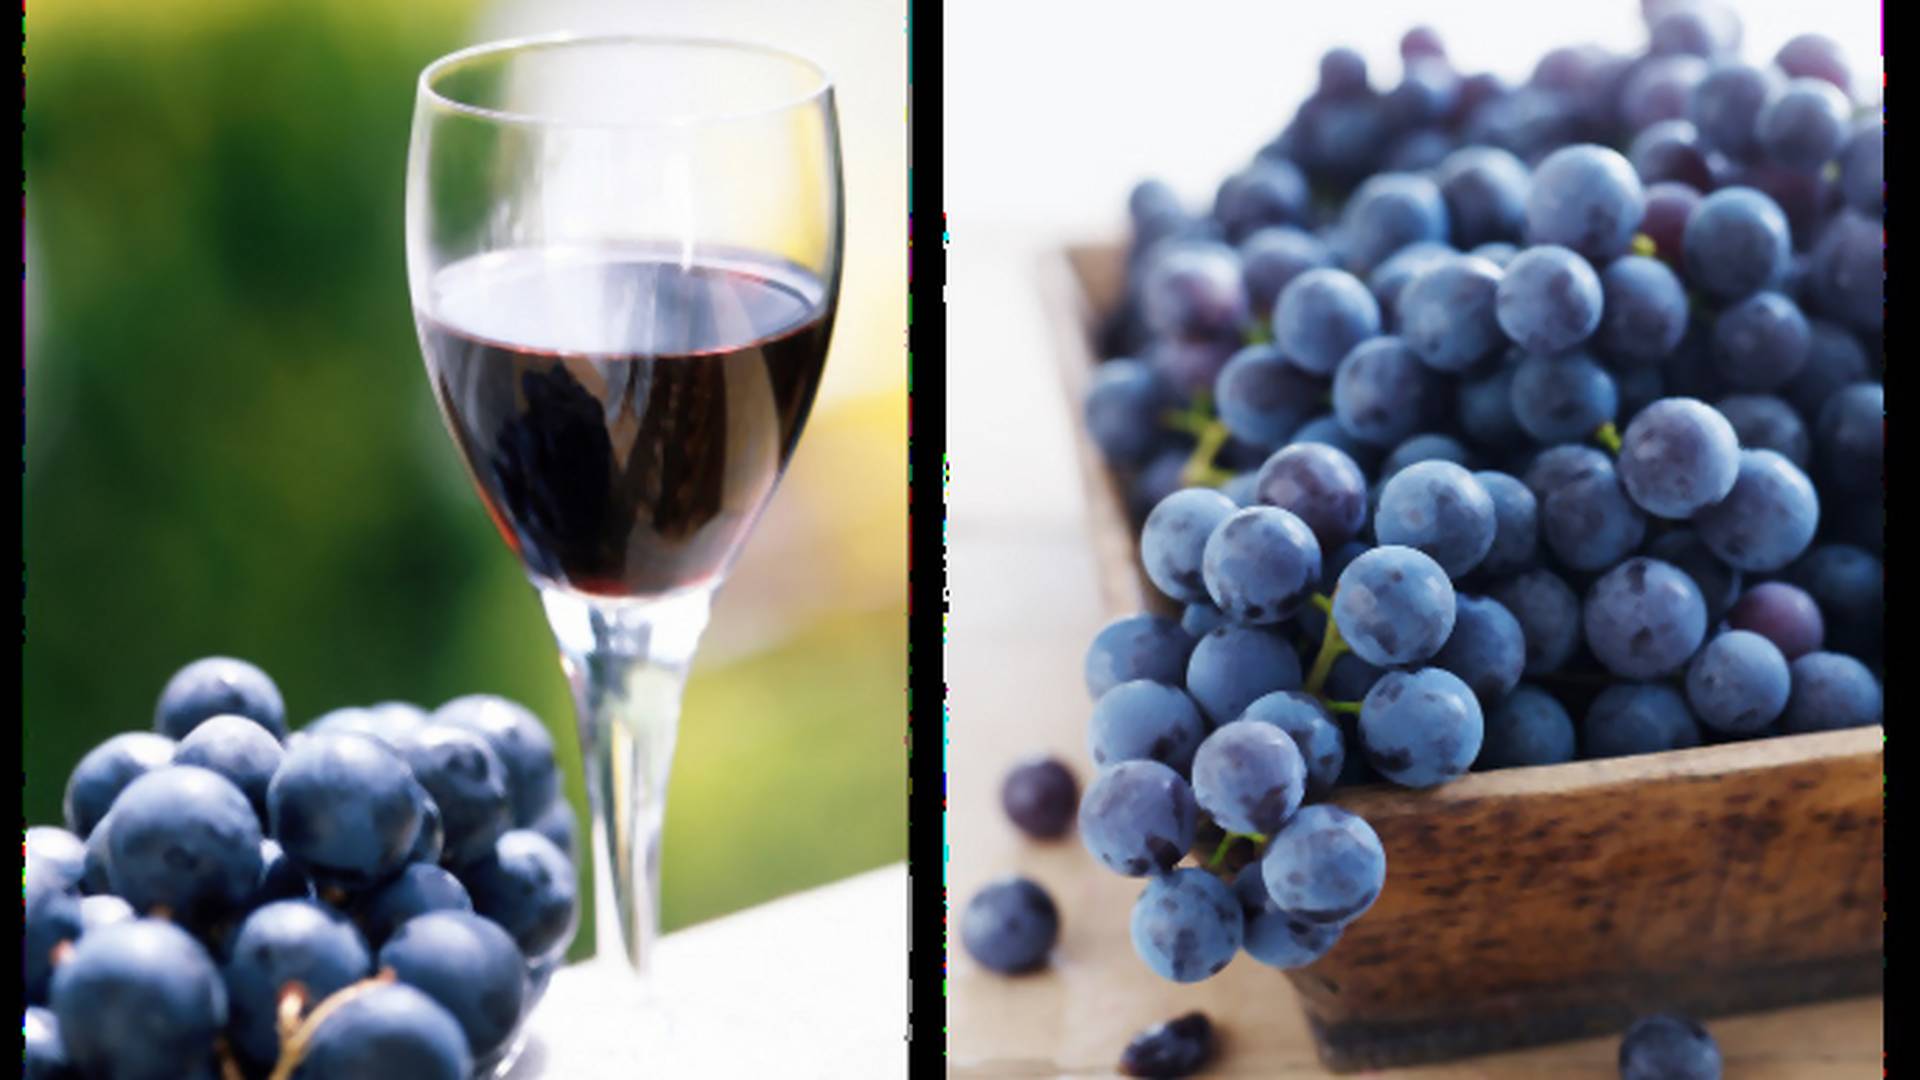 Nalewka z winogron - przepis na aromatyczny alkohol